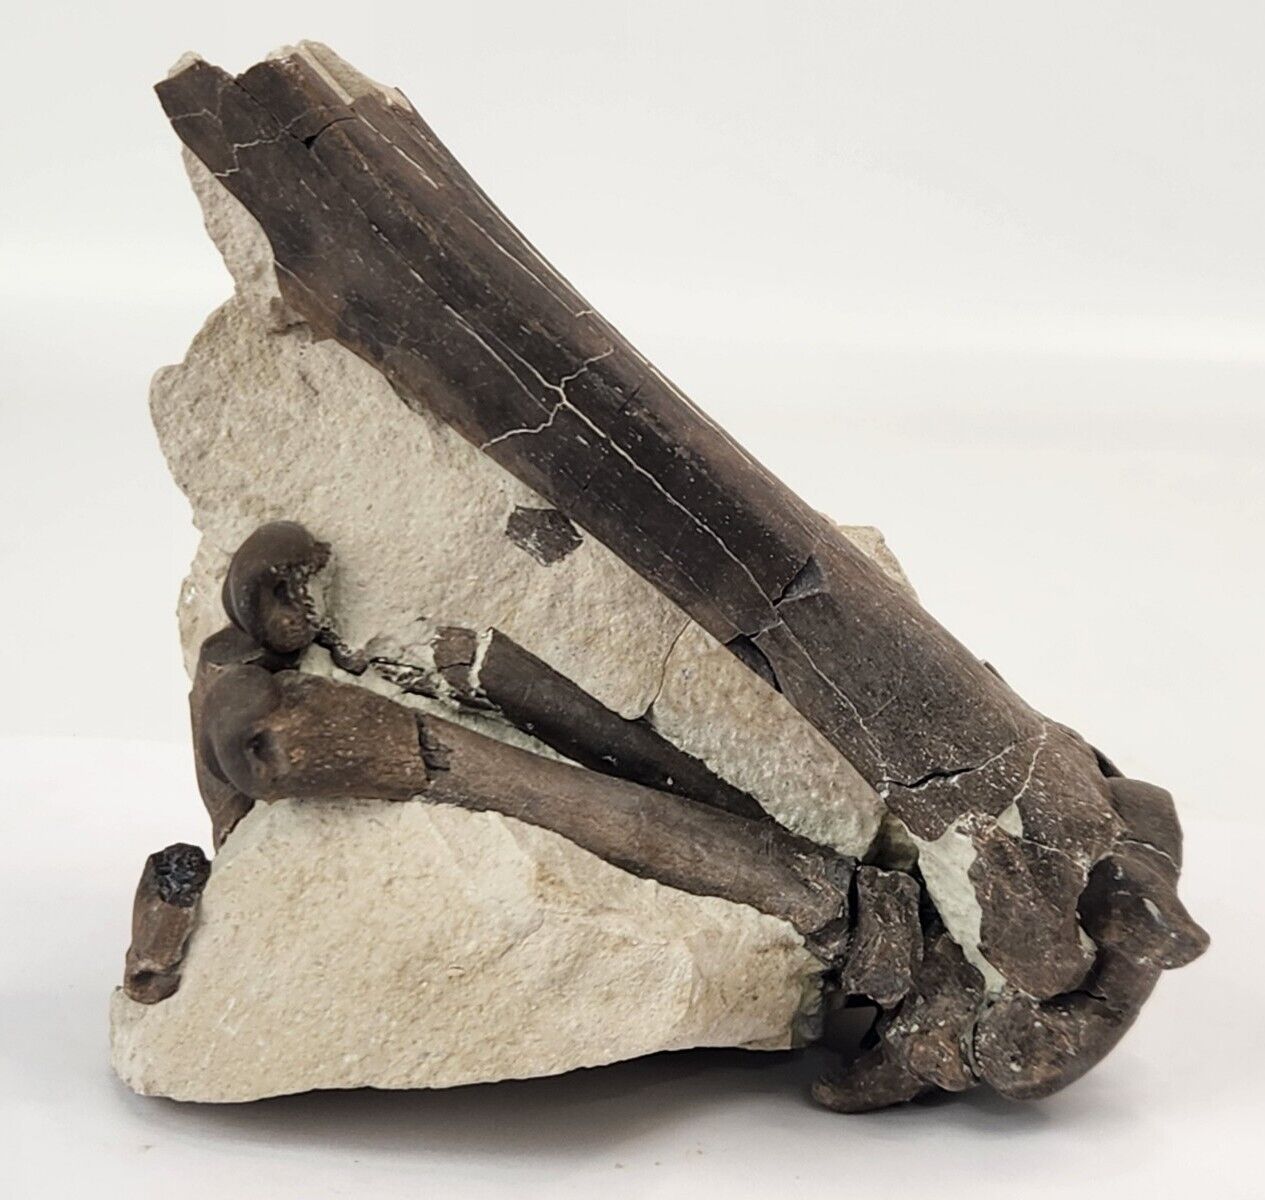 Oreodont Right Leg Fossils In Matrix - White River Group - Brule Fm. - NE